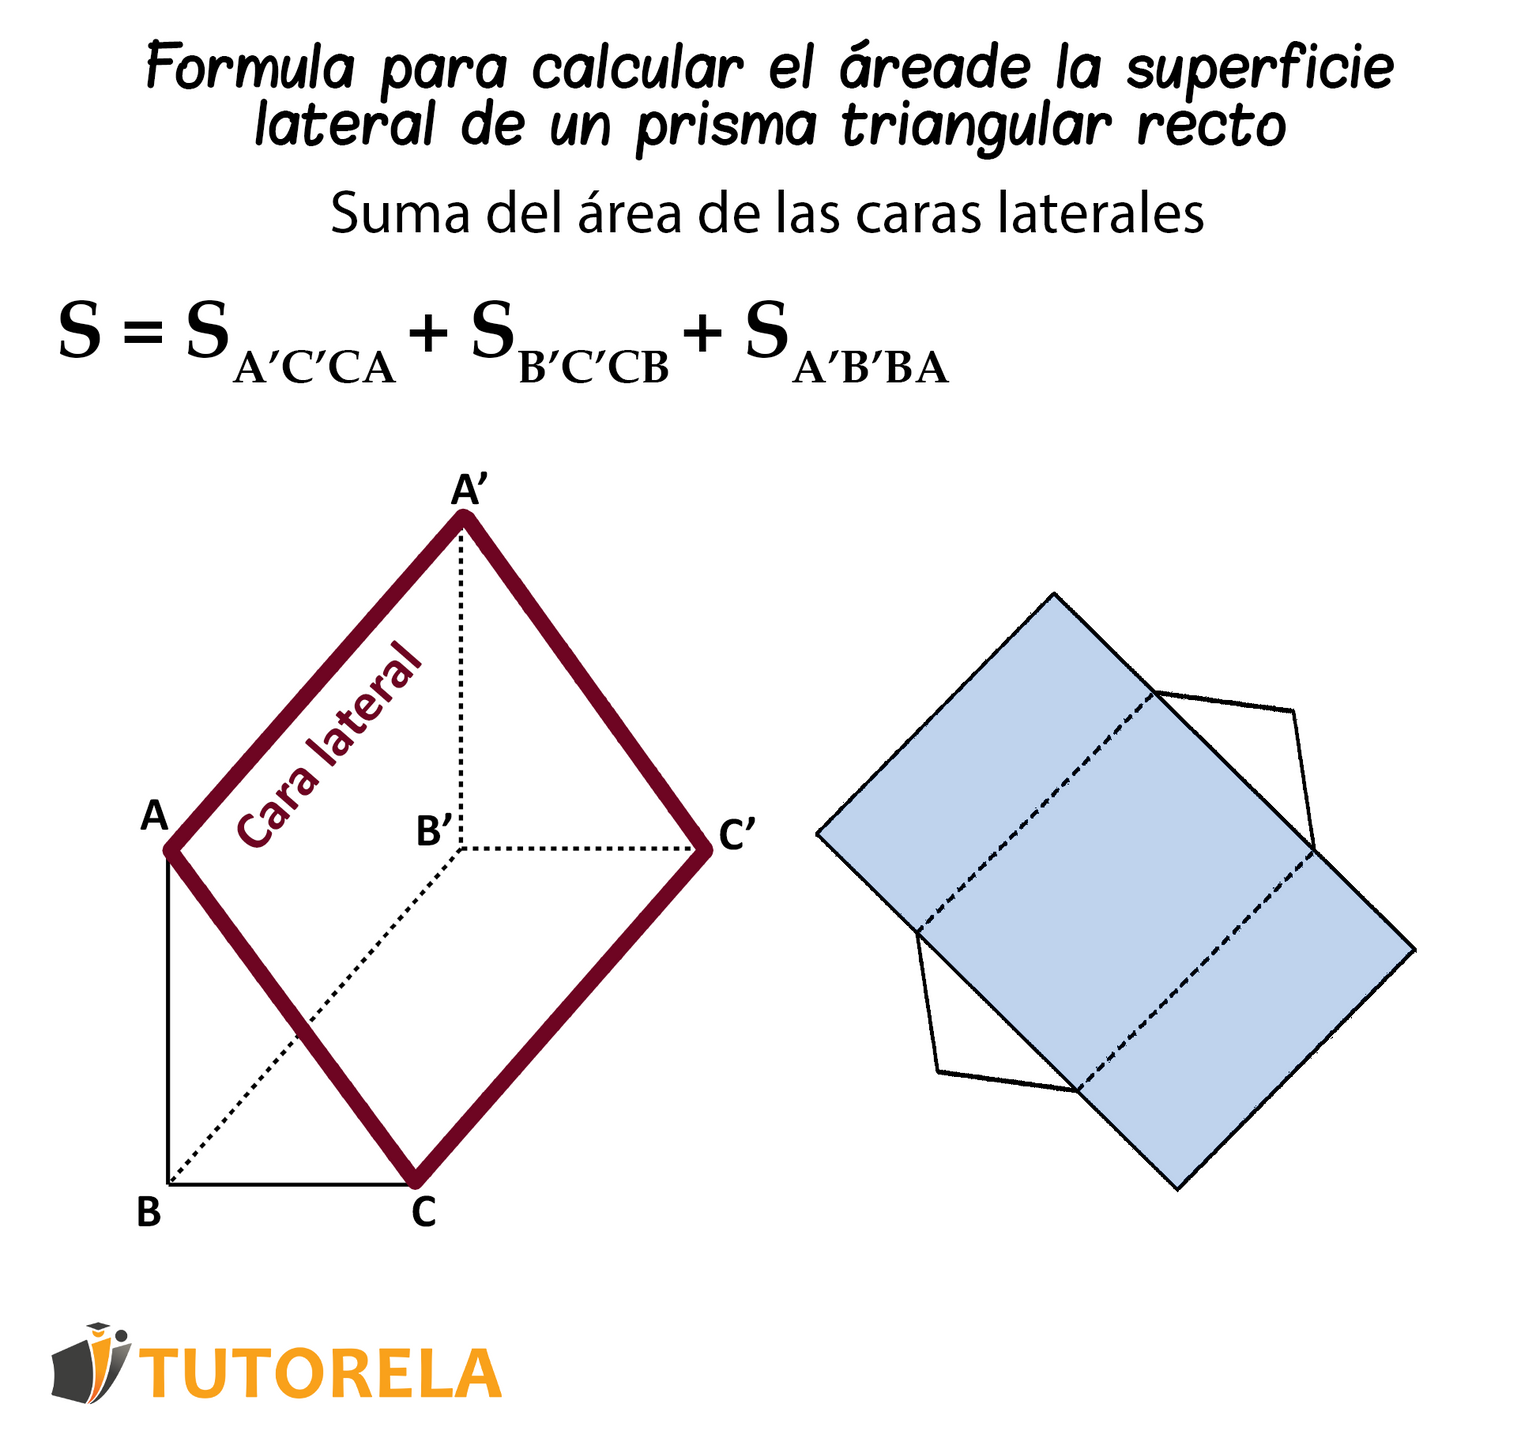 Formula para calcular el área de la superficie lateral de un prisma triangular recto